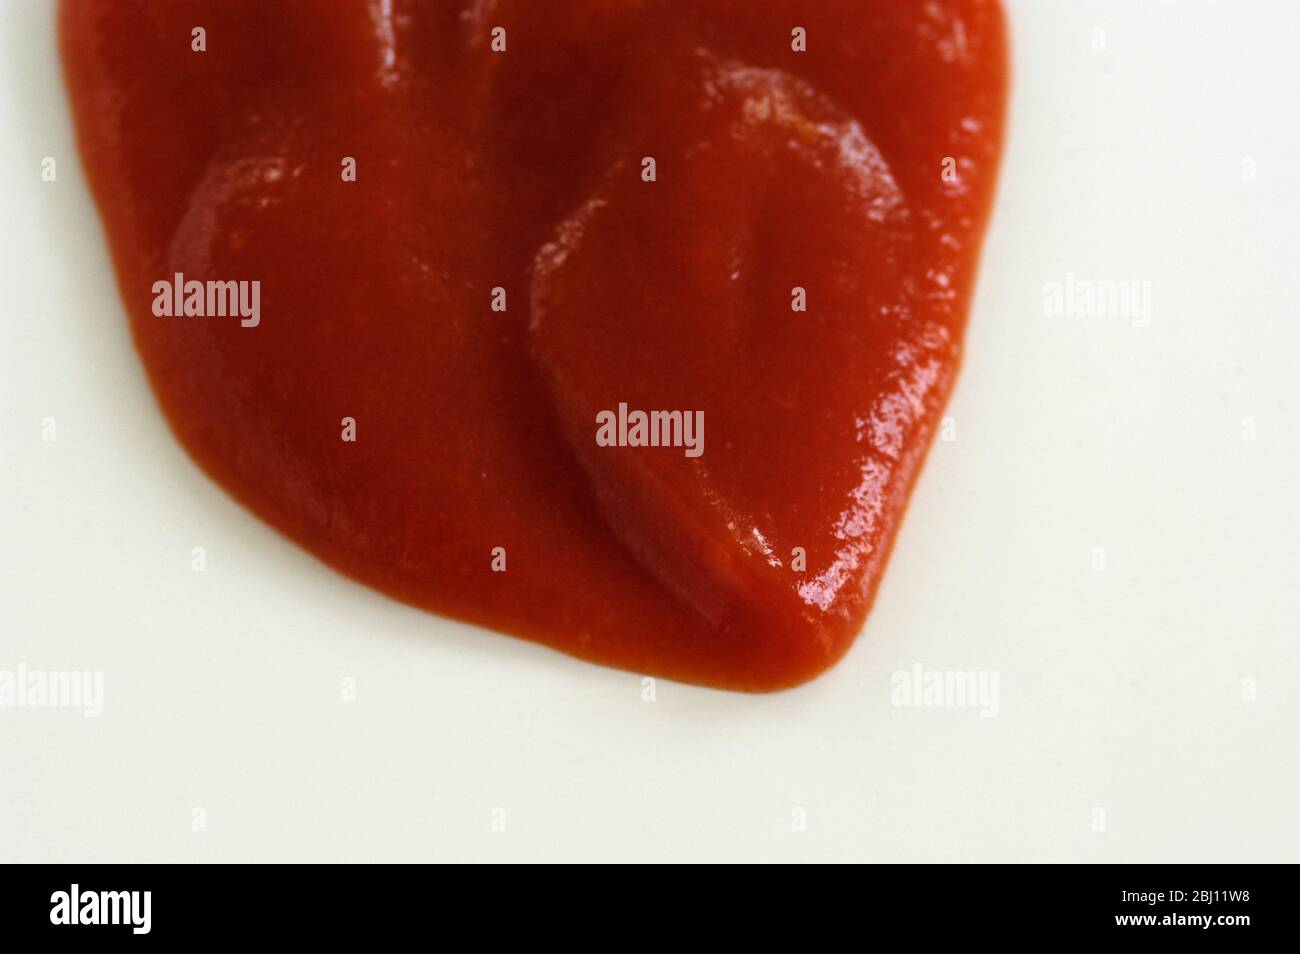 Klecks Tomatenketchup auf weißem Hintergrund - Stockfoto